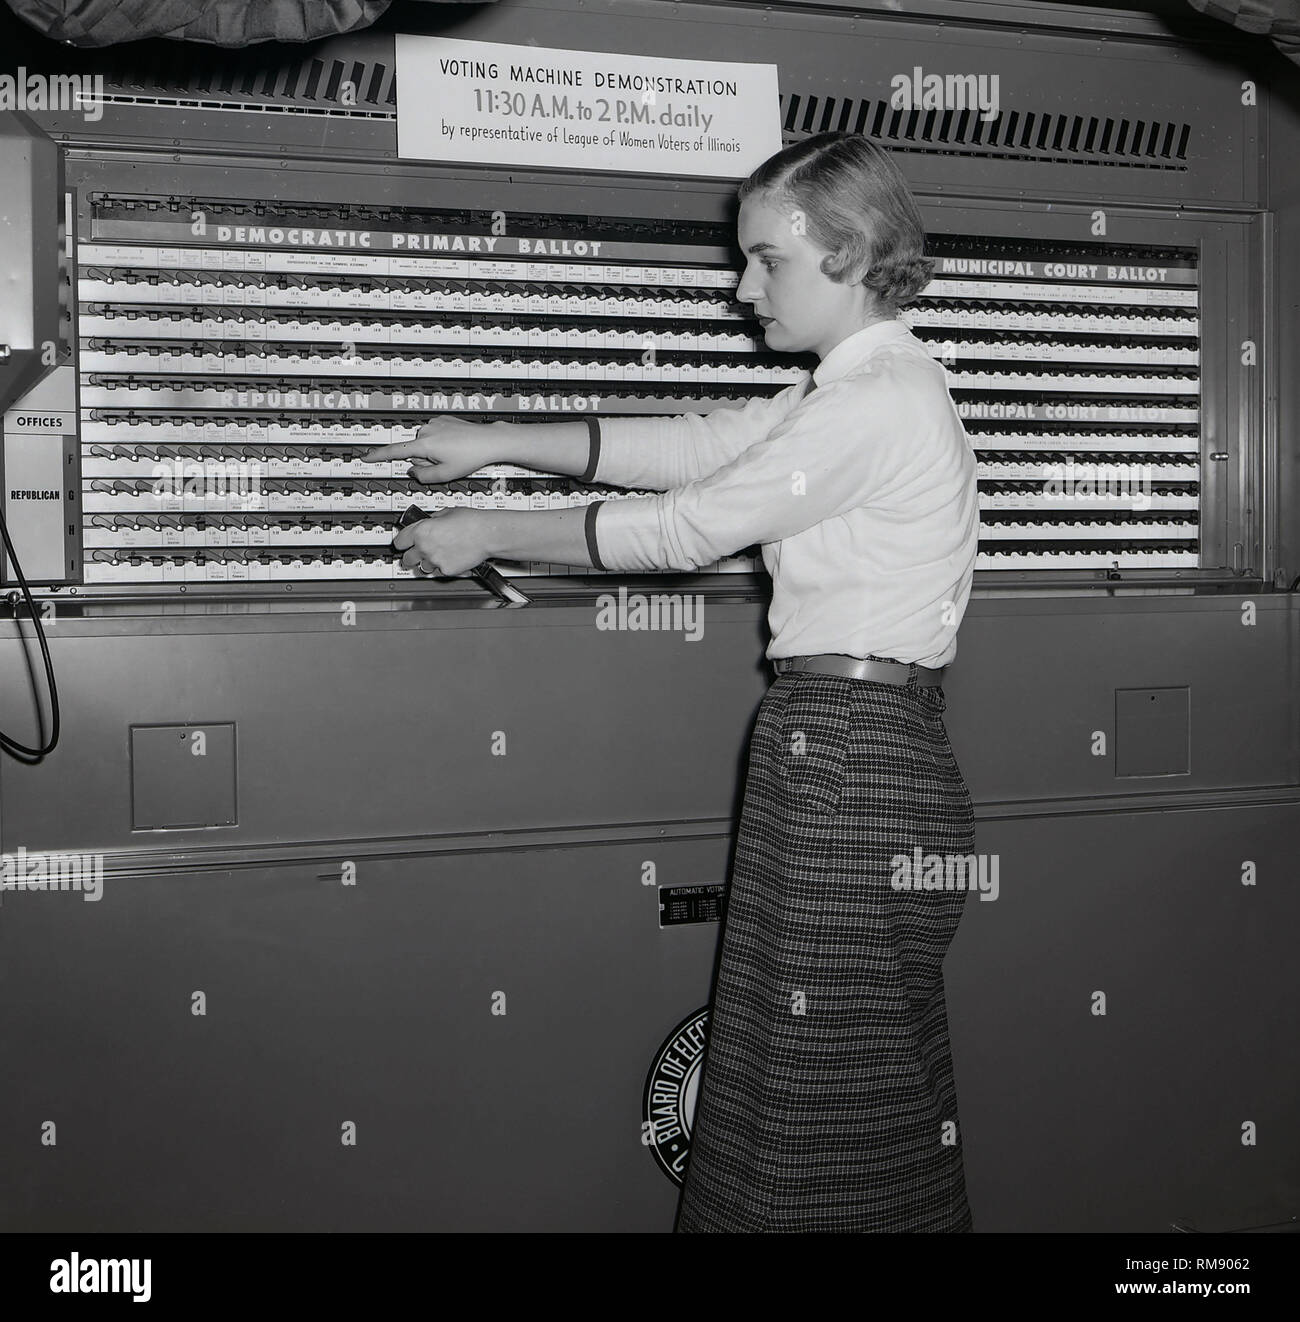 Un rappresentante della Lega delle donne votanti di Illinois dimostra una macchina di voto in Chicago, ca. 1954. Foto Stock